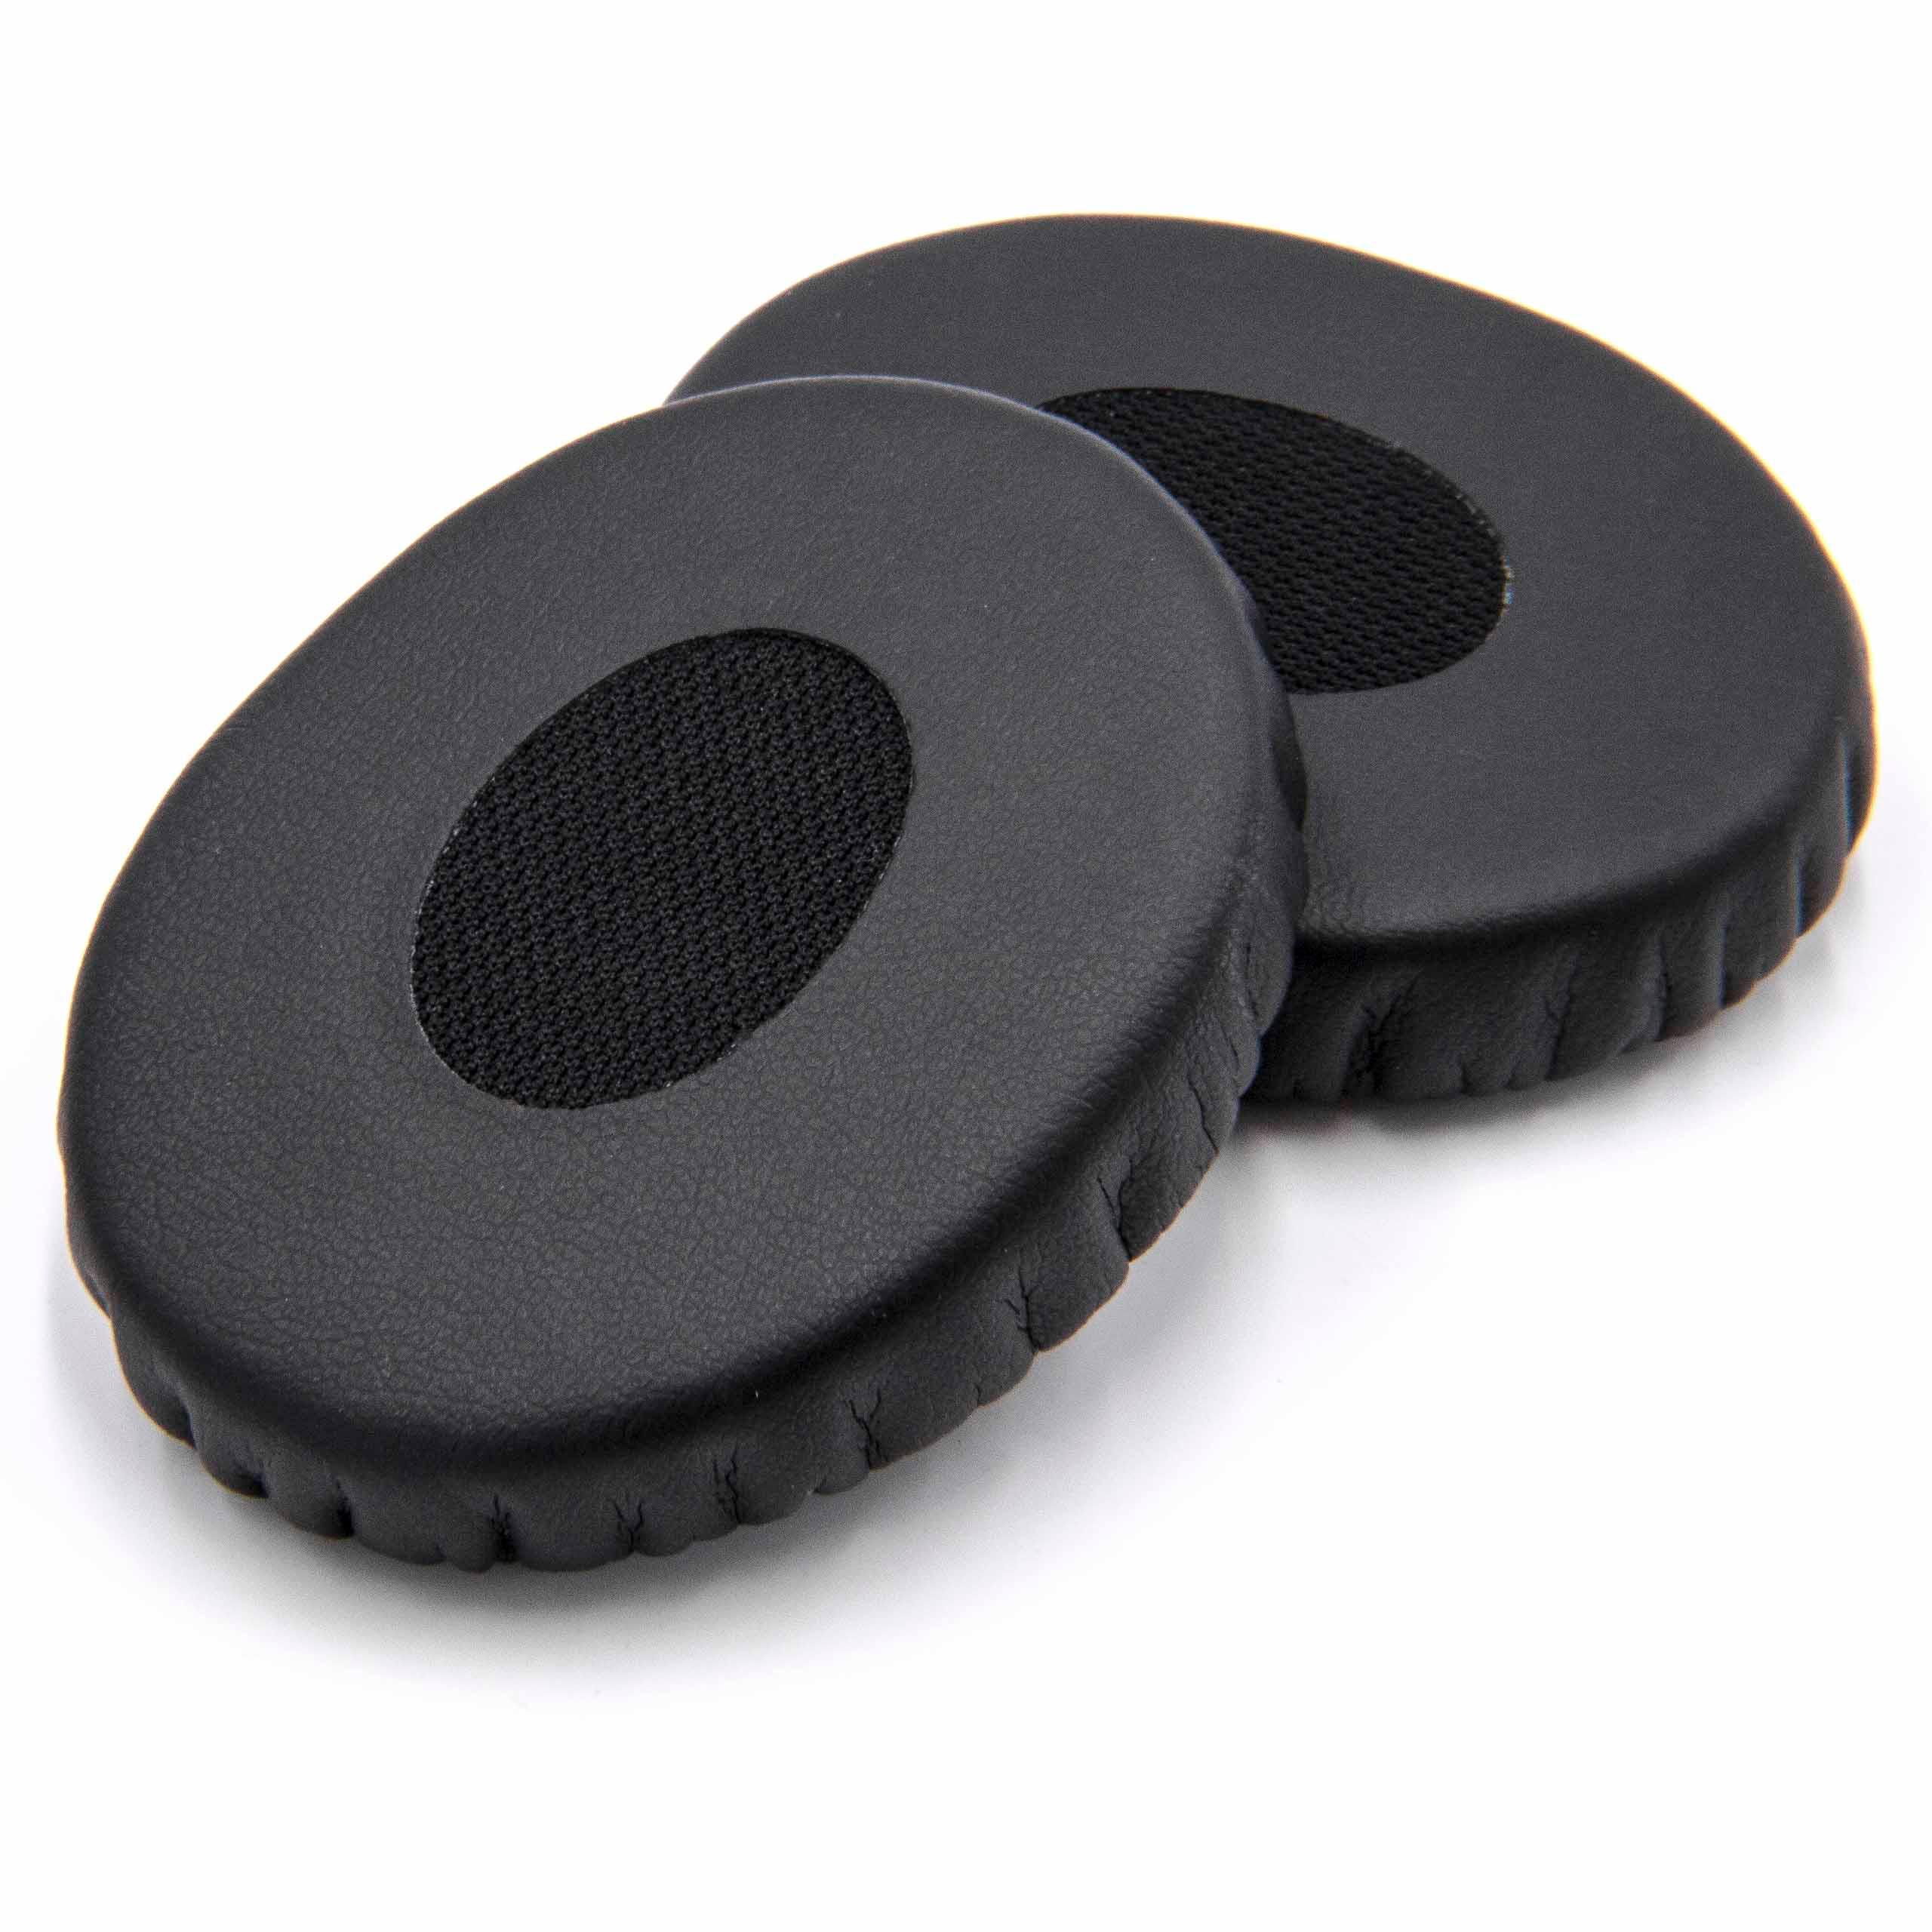 2x 1 paio di cuscinetti per Bose OnEar cuffie ecc. - fibra sintetica, 5,6 cm diametro esterno, nero